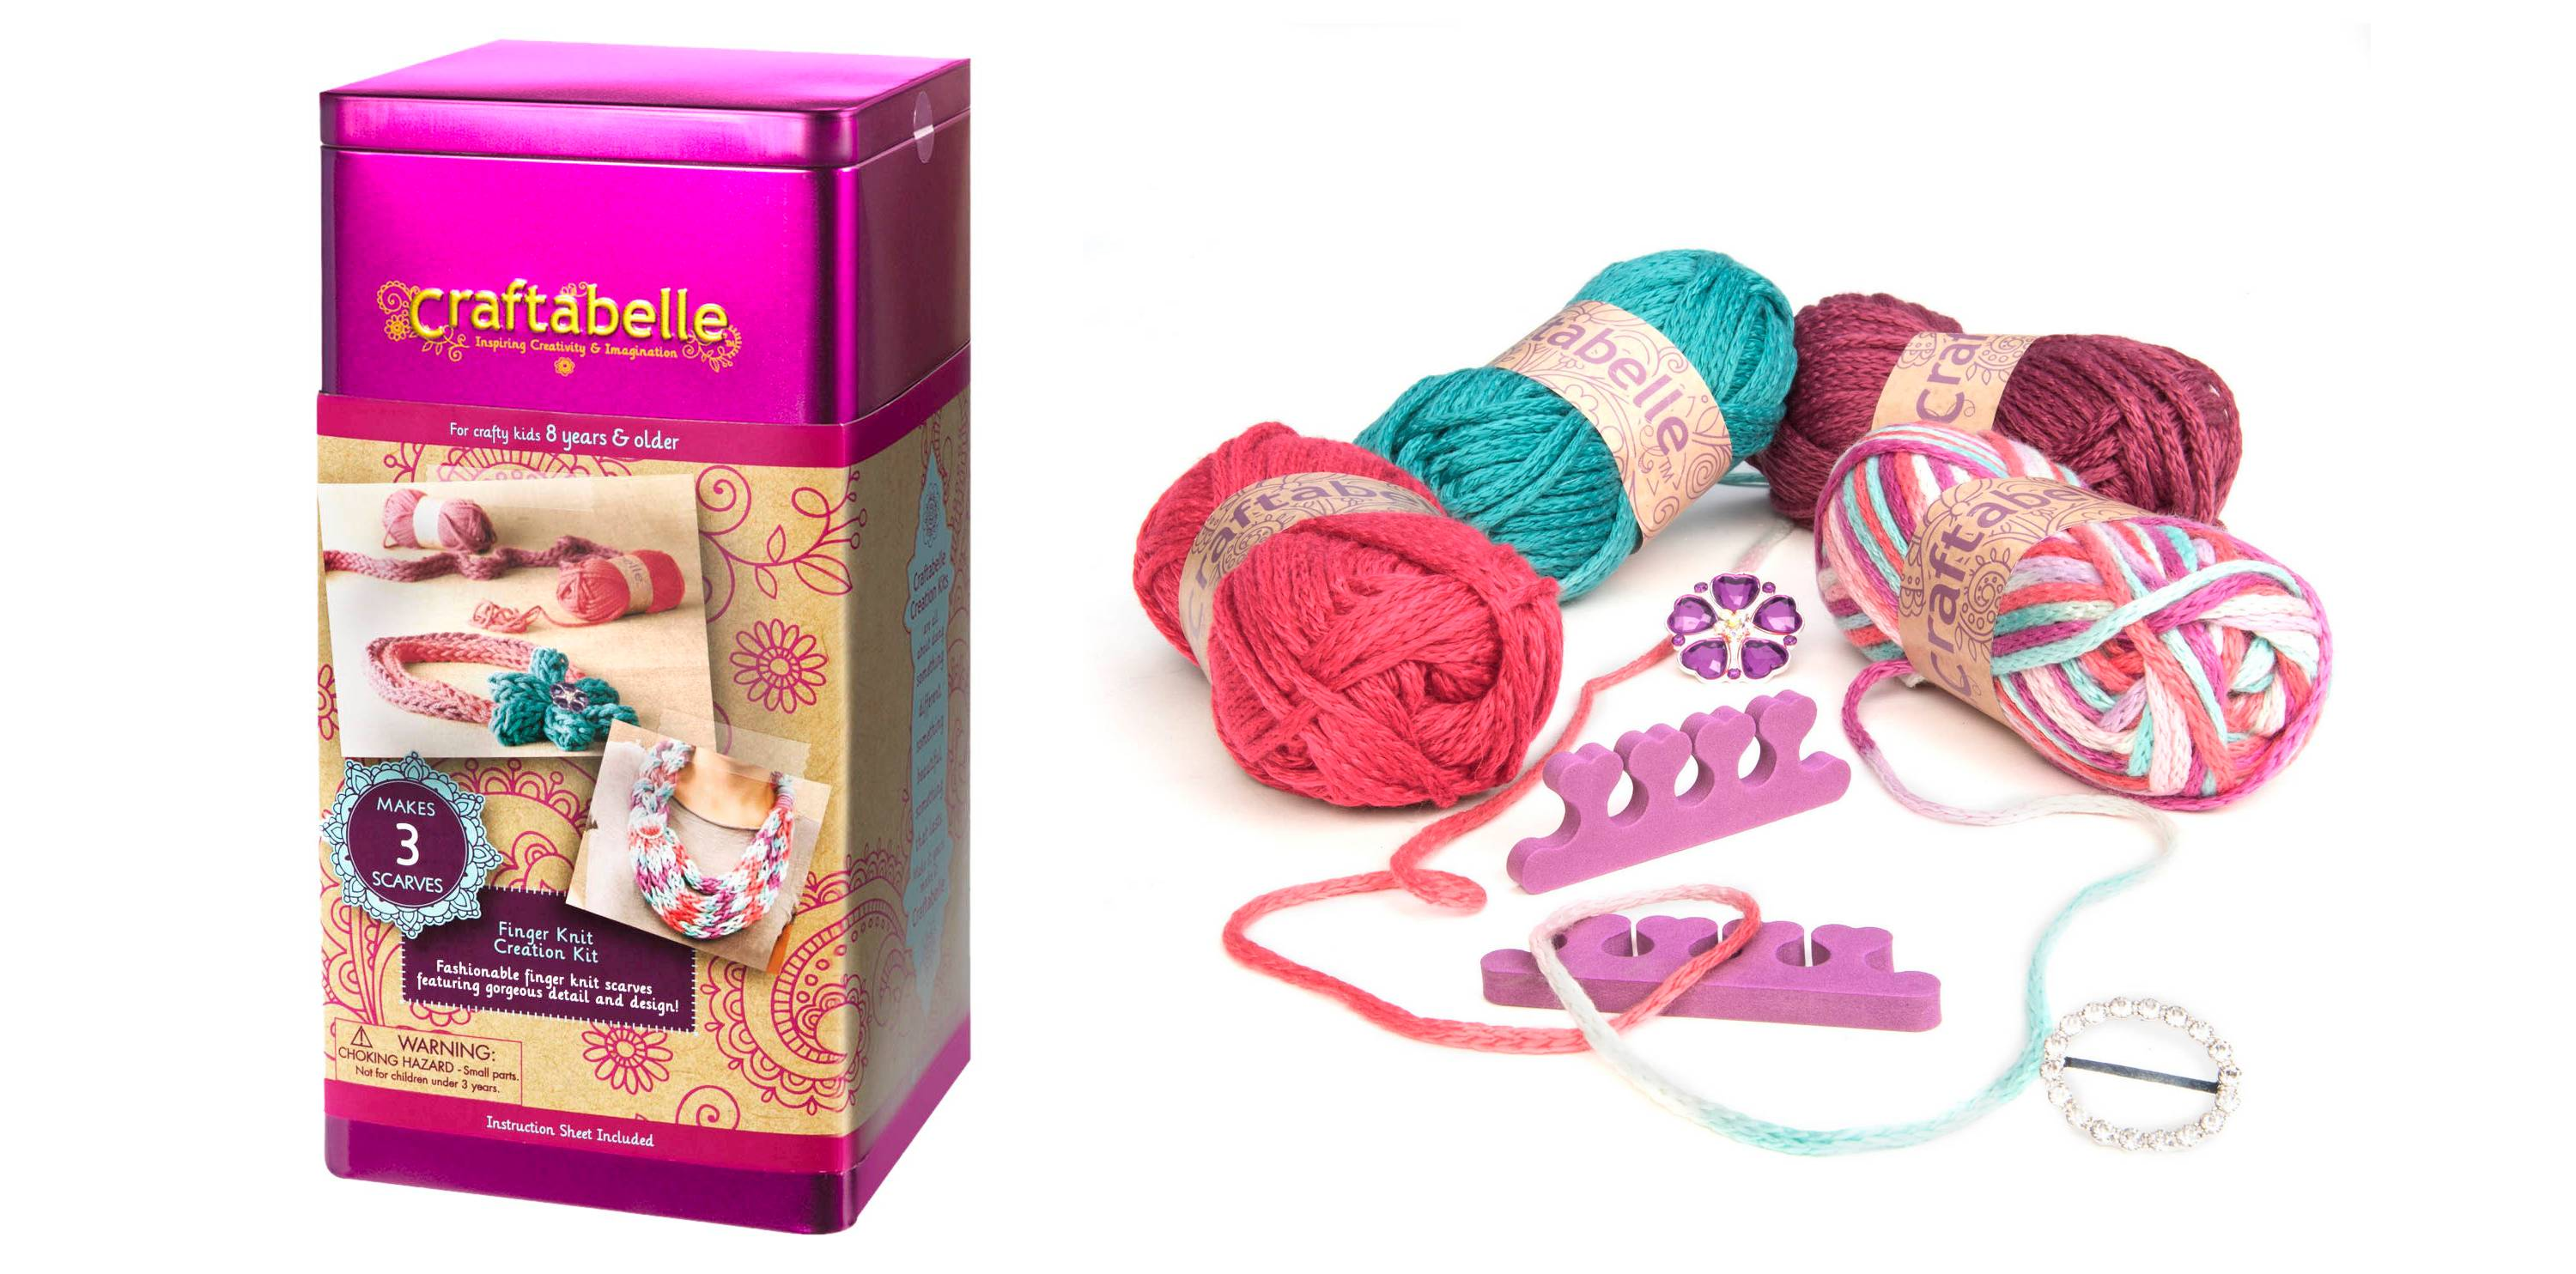 Craftabelle Finger Knitting Kit Only $10.48!